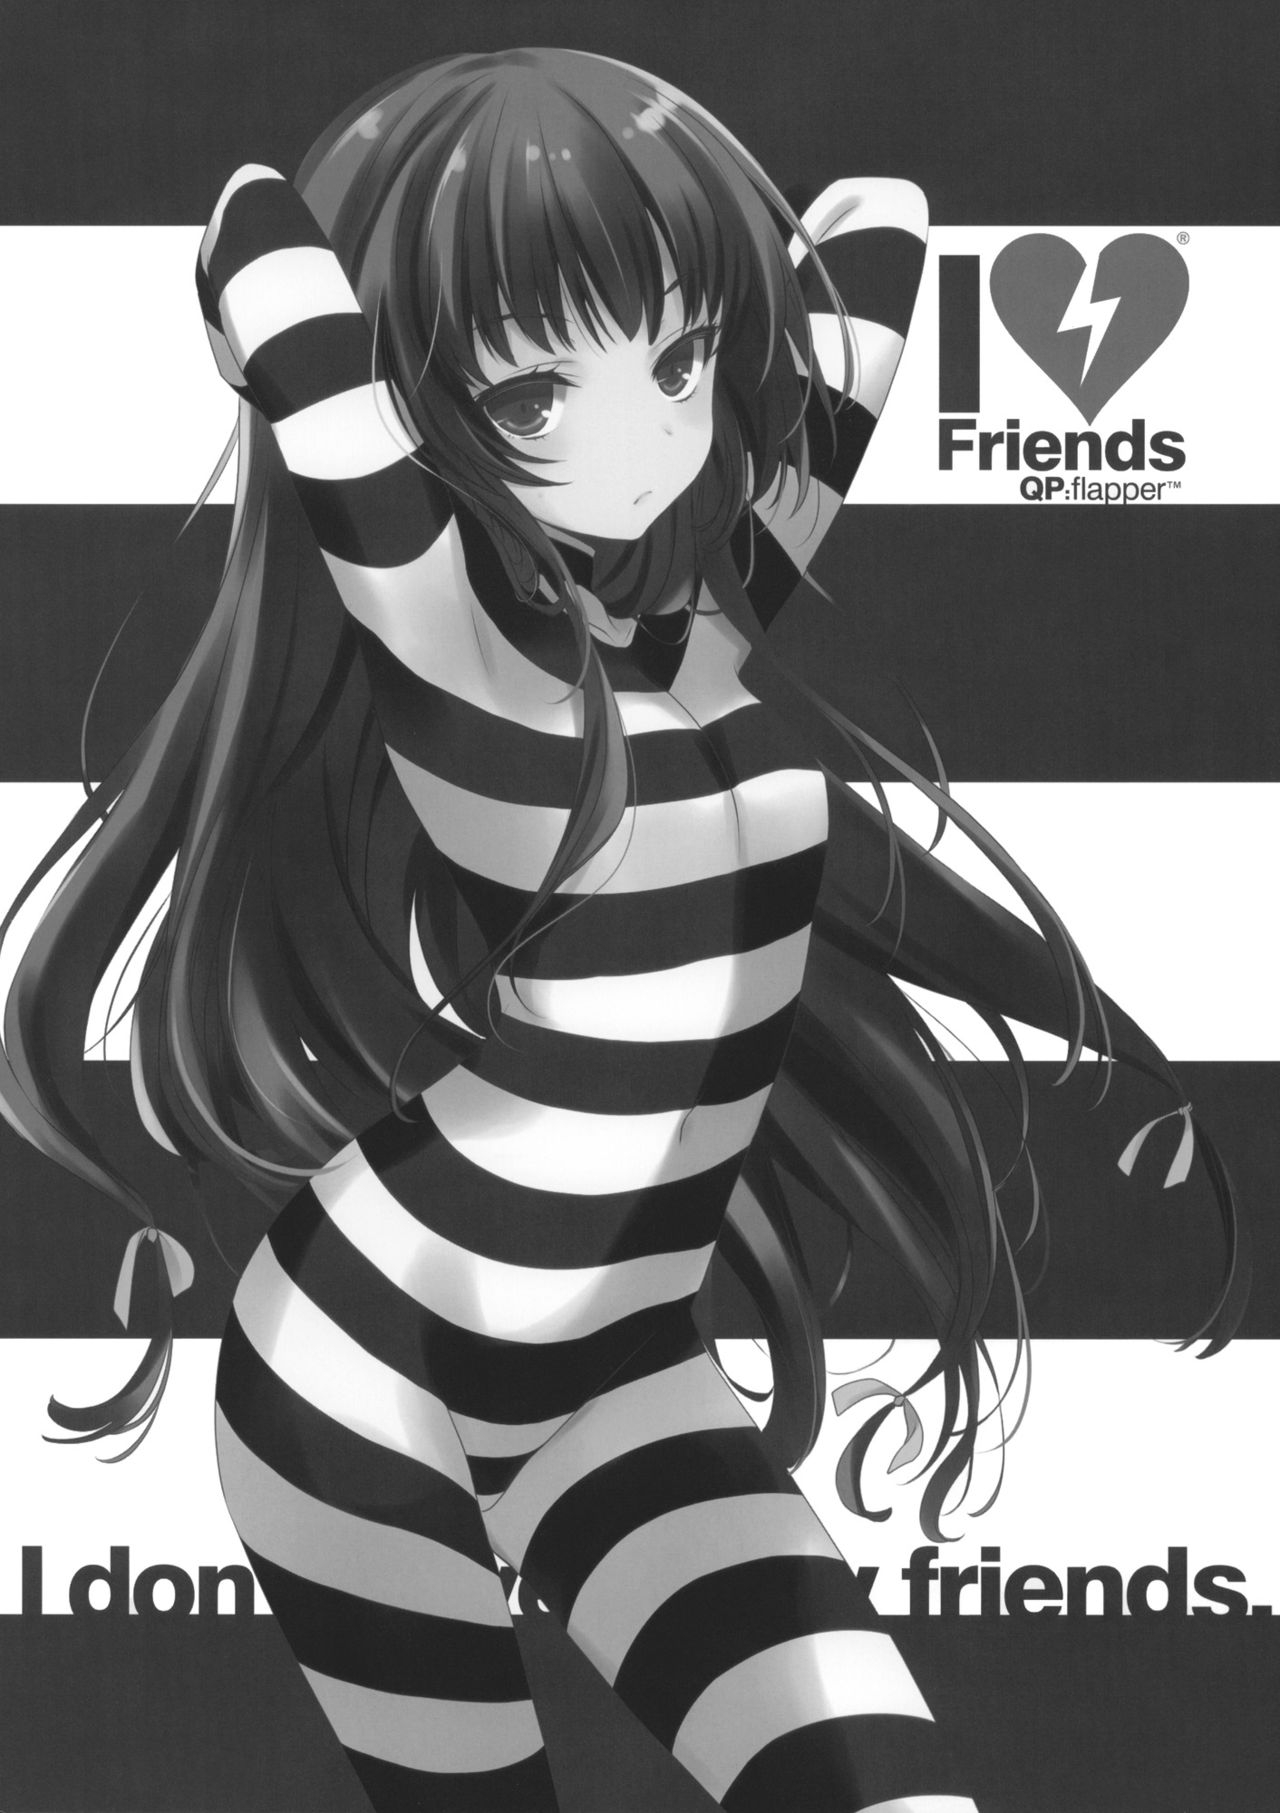 (COMIC1☆5) [QP:flapper (Sakura Koharu, Ohara Tometa)] I ♥ Friends (Boku wa Tomodachi ga Sukunai) 1